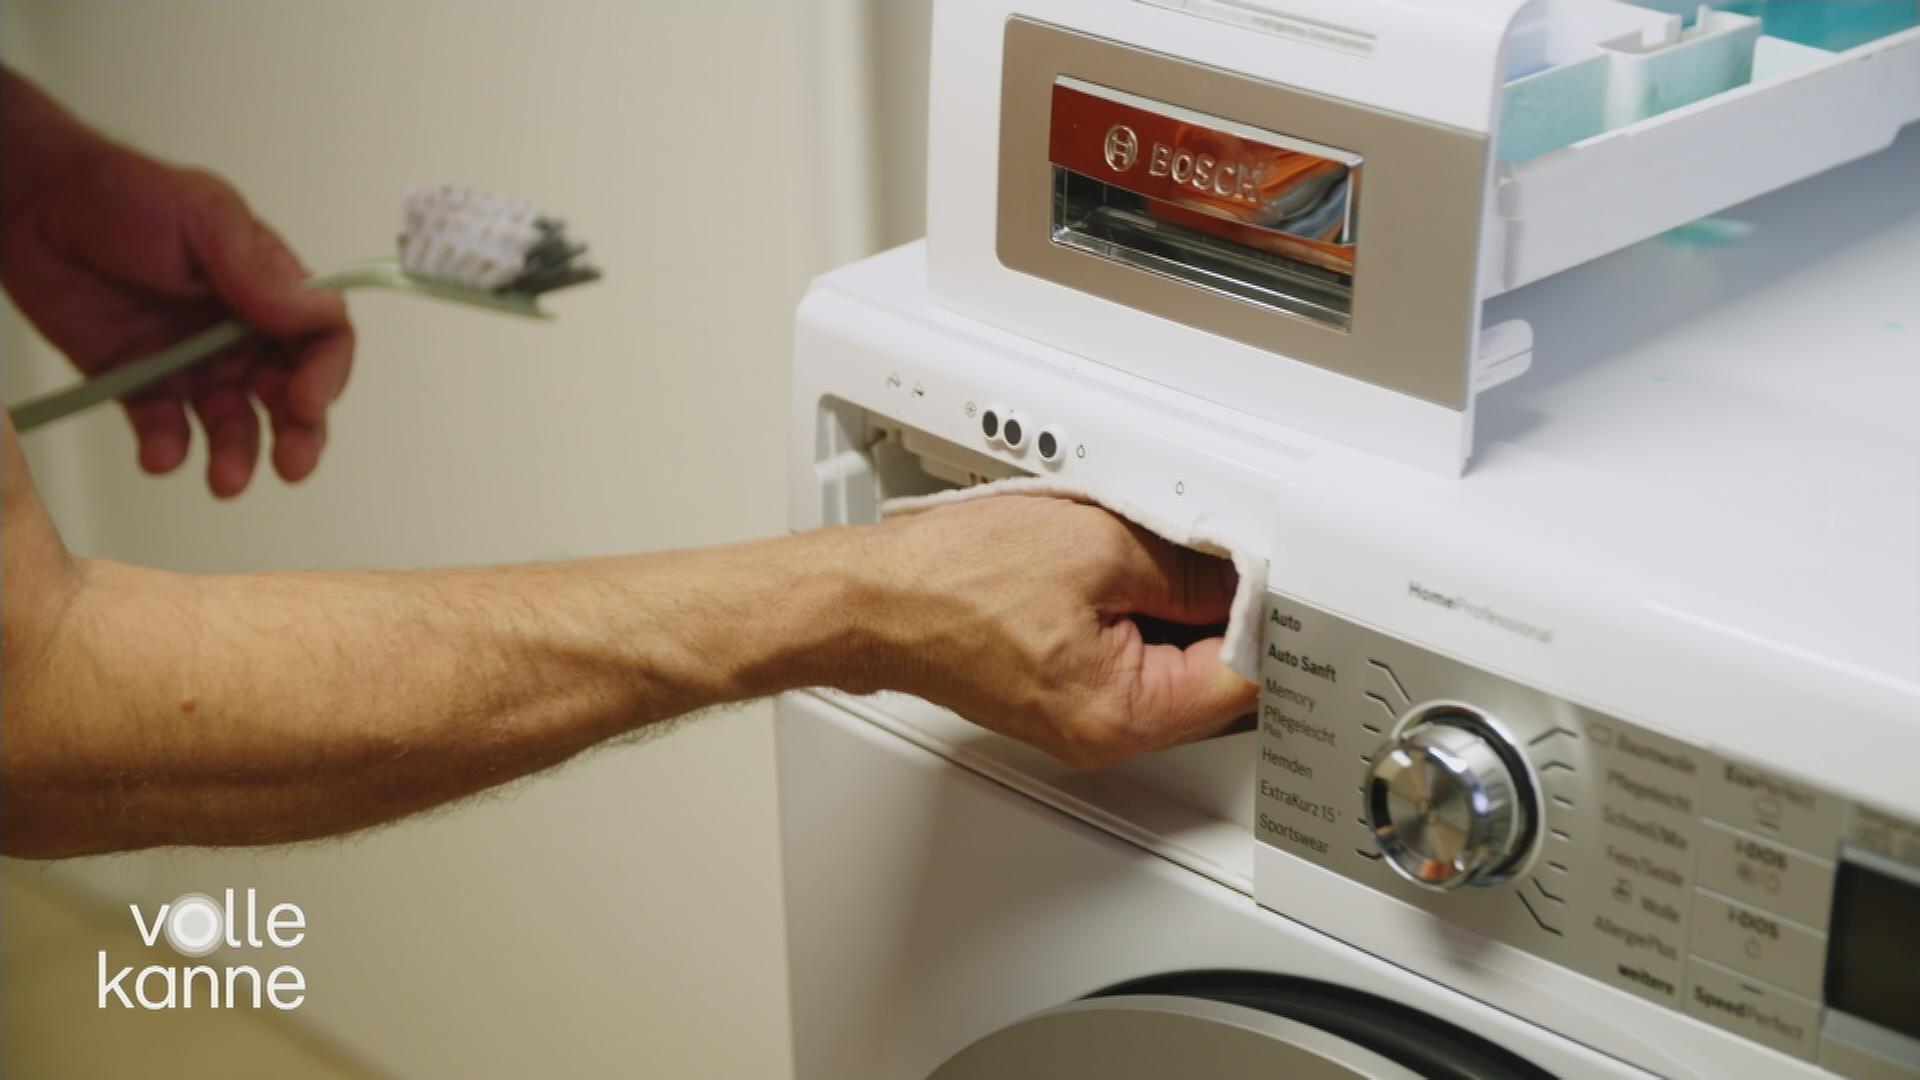 Waschmaschine reinigen